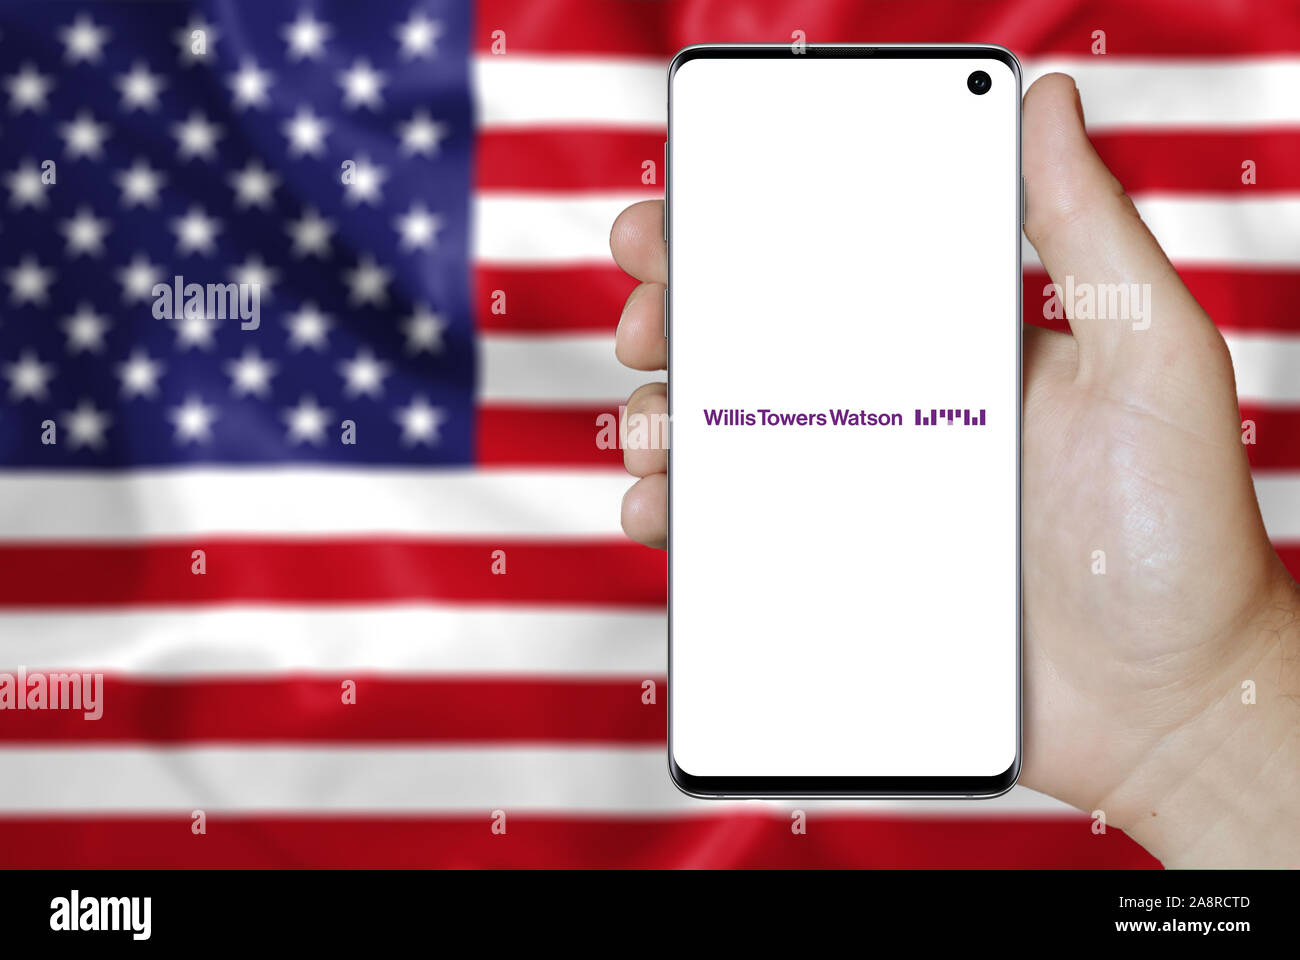 Il logo della società pubblica Willis Towers Watson visualizzata su uno smartphone. Bandiera degli Stati Uniti sullo sfondo. Credito: PIXDUCE Foto Stock